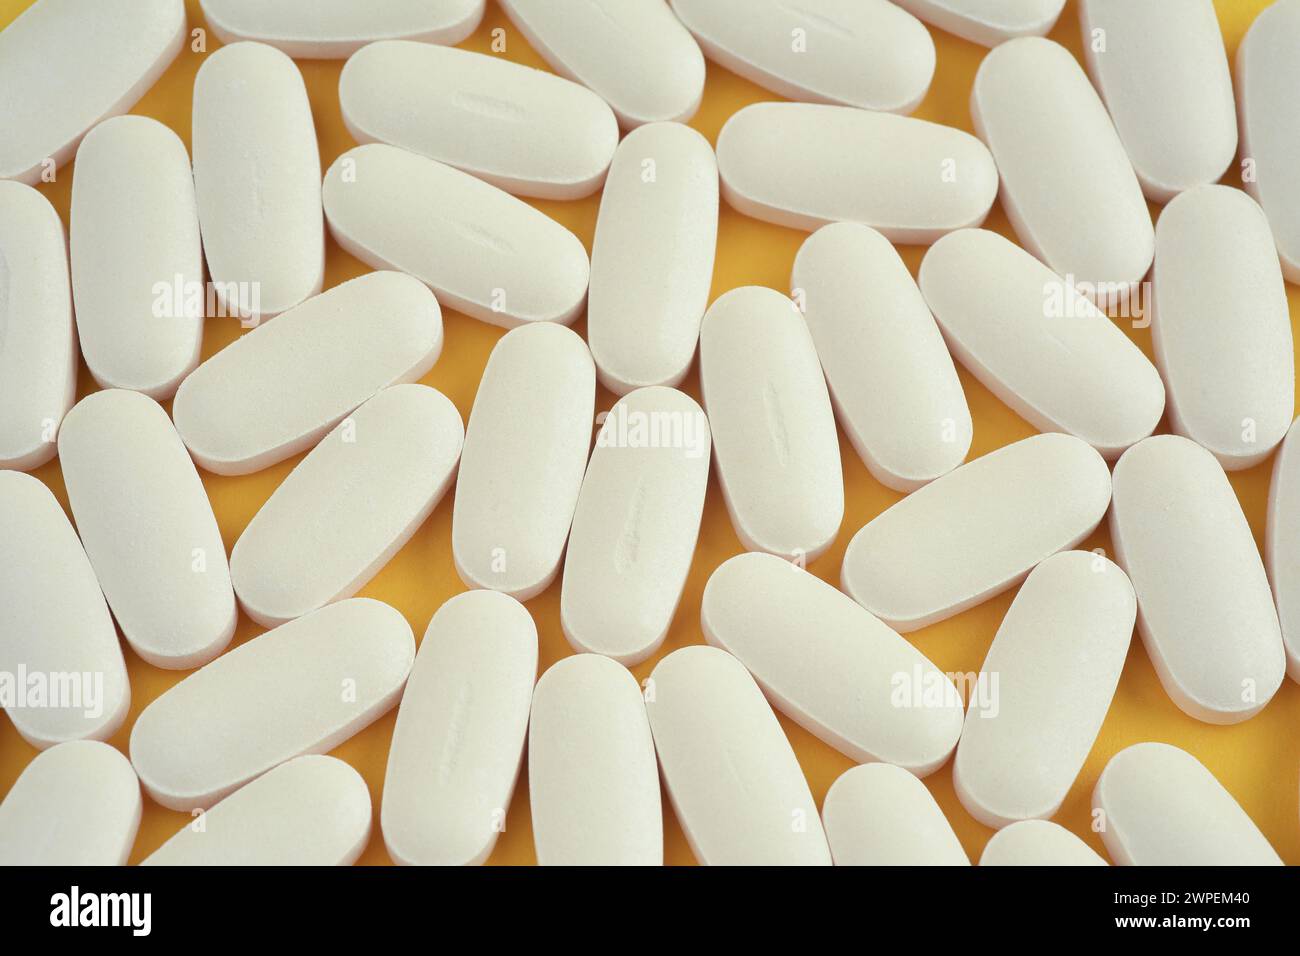 Photographie rapprochée vue du dessus d'un groupe de comprimés de vitamines blanches de forme ovale ou de pilules sur fond jaune. Vue de dessus. Banque D'Images